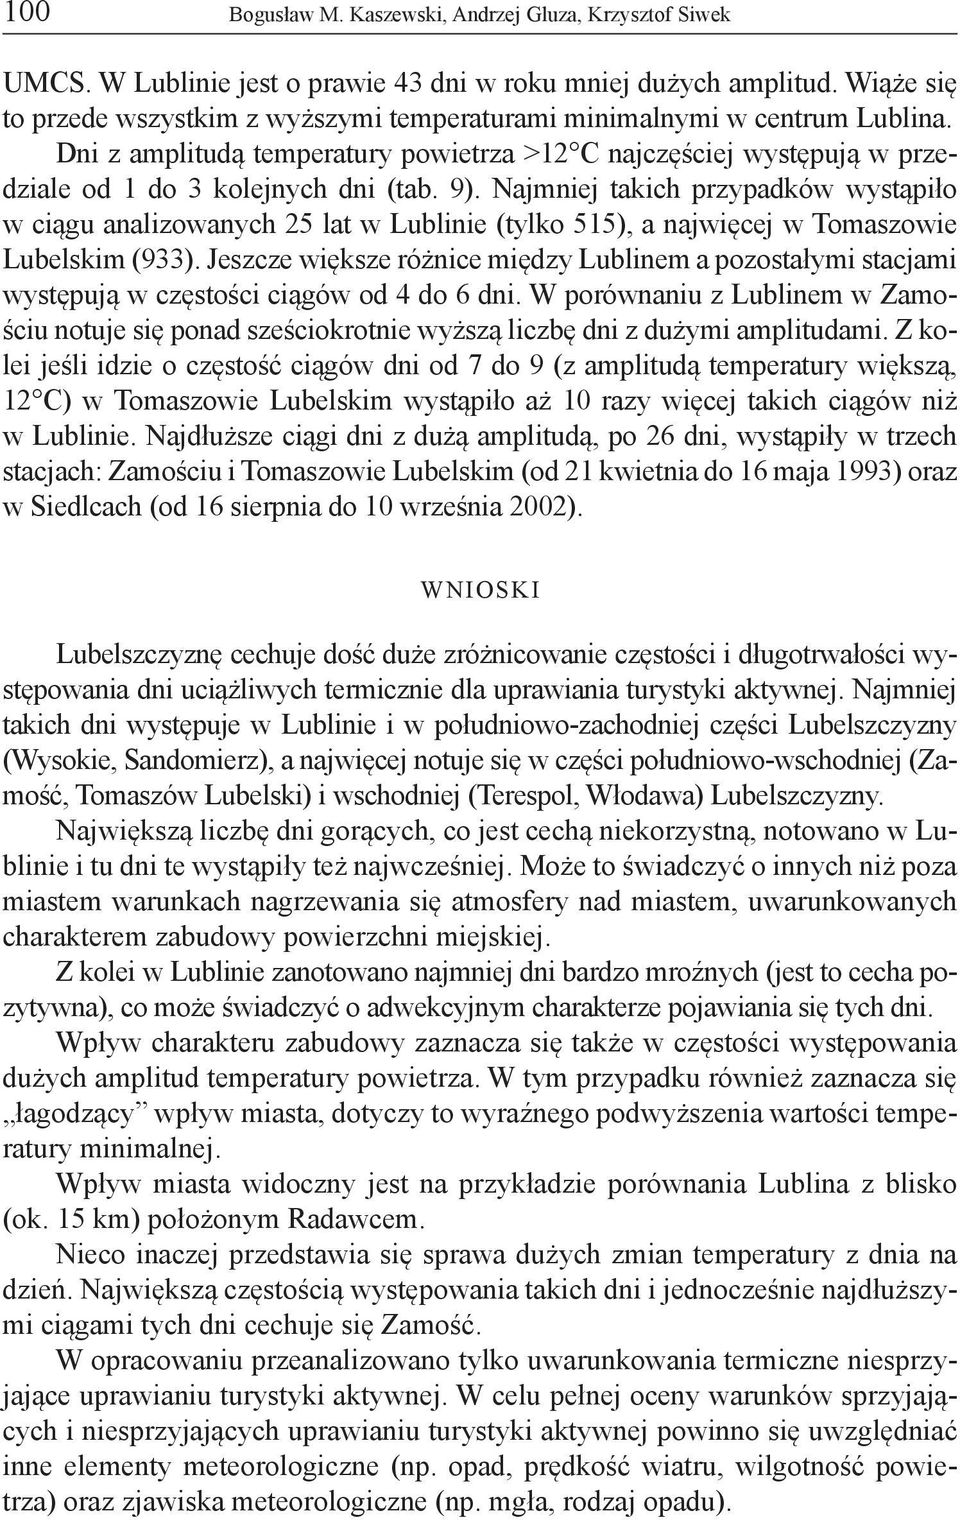 Najmniej takich przypadków wystąpiło w ciągu analizowanych 25 lat w Lublinie (tylko 515), a najwięcej w Tomaszowie Lubelskim (933).